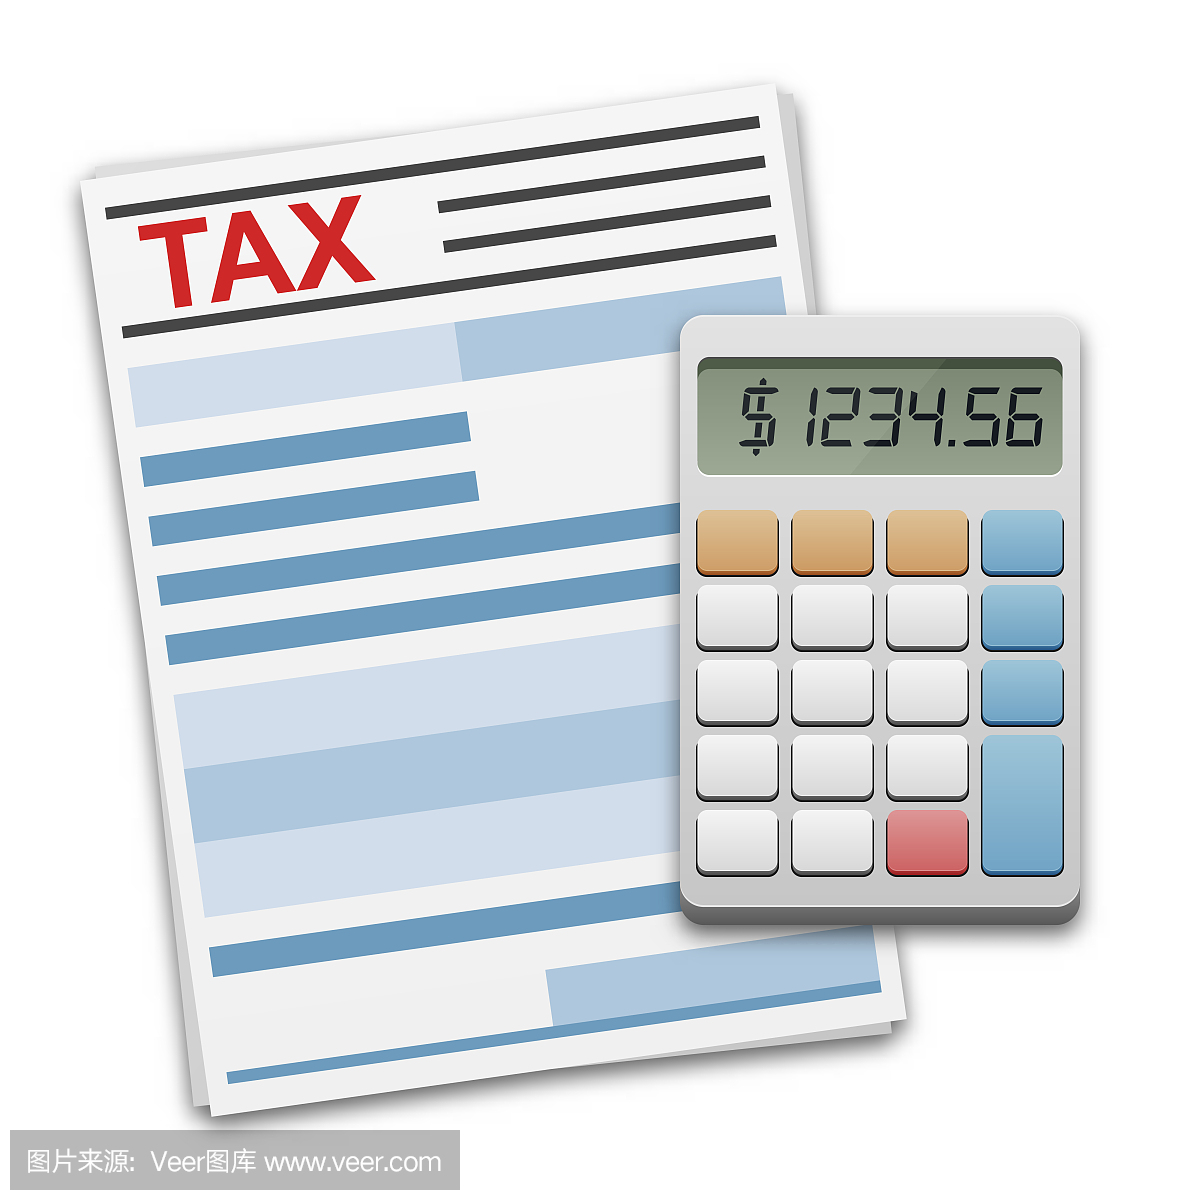 税收计算,支付或回报的概念。财务文件和计算